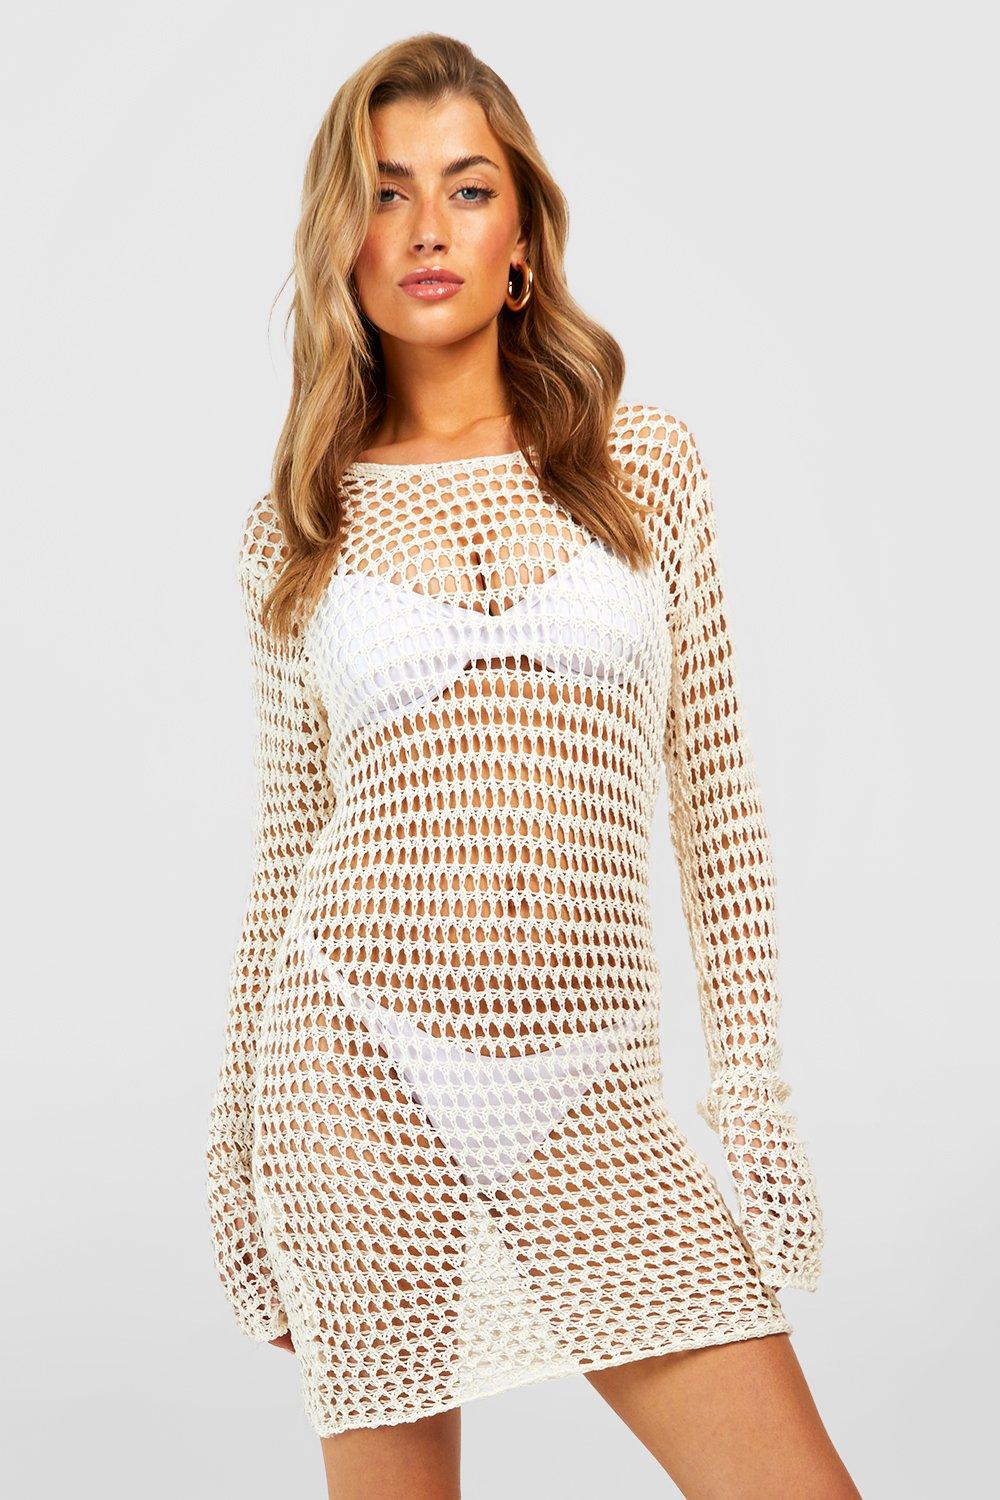 Crochet Scallop Scoop Beach Dress